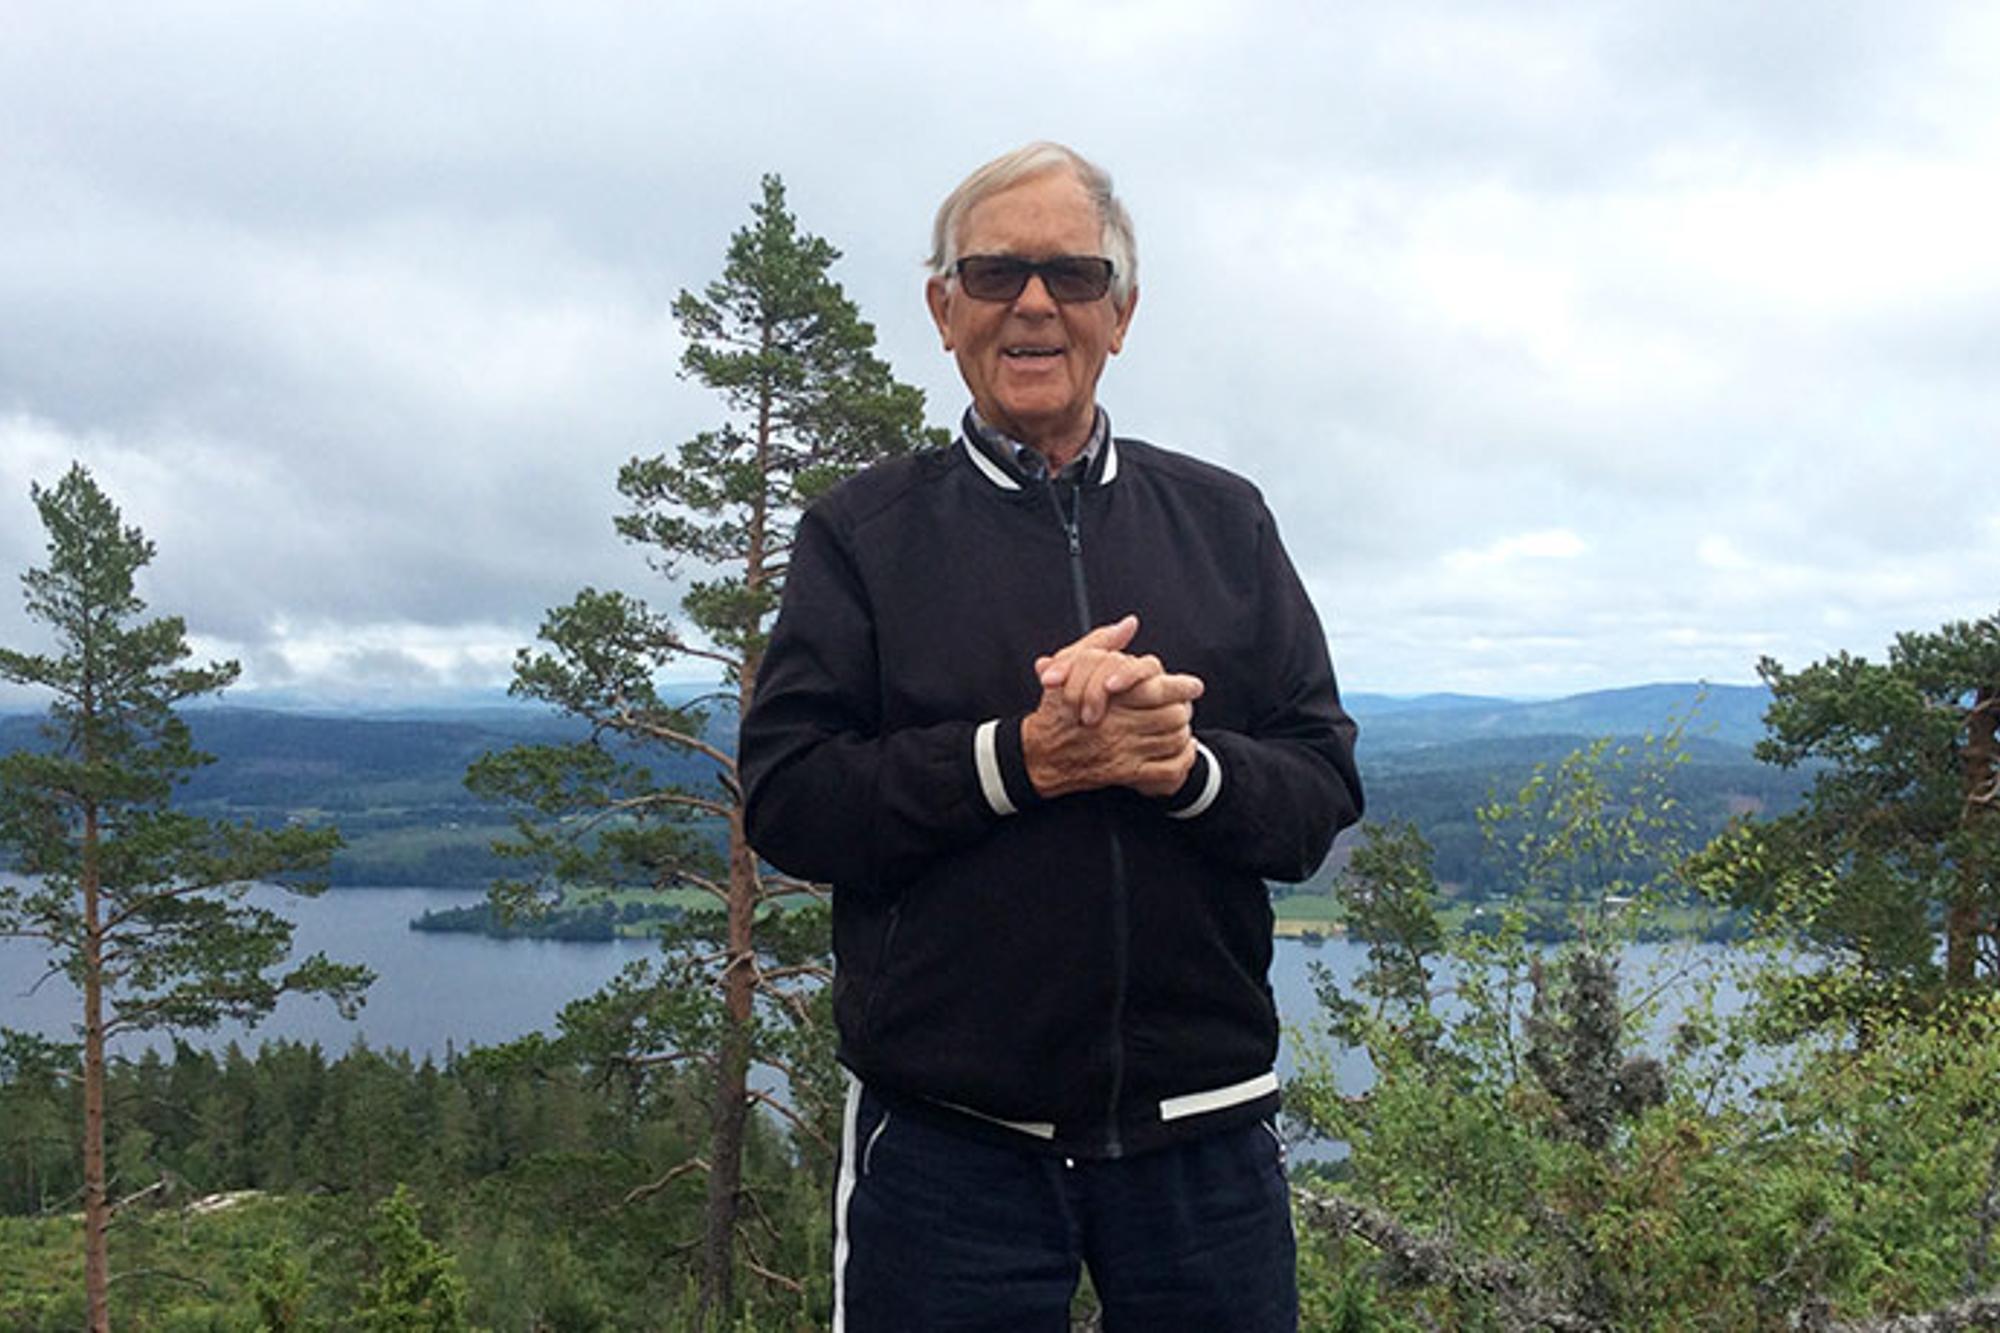 Porträttbild av Bengt Johansson. Han står utomhus med knutna händer och med blicken i kameran. Bakom honom syns skog och en sjö.